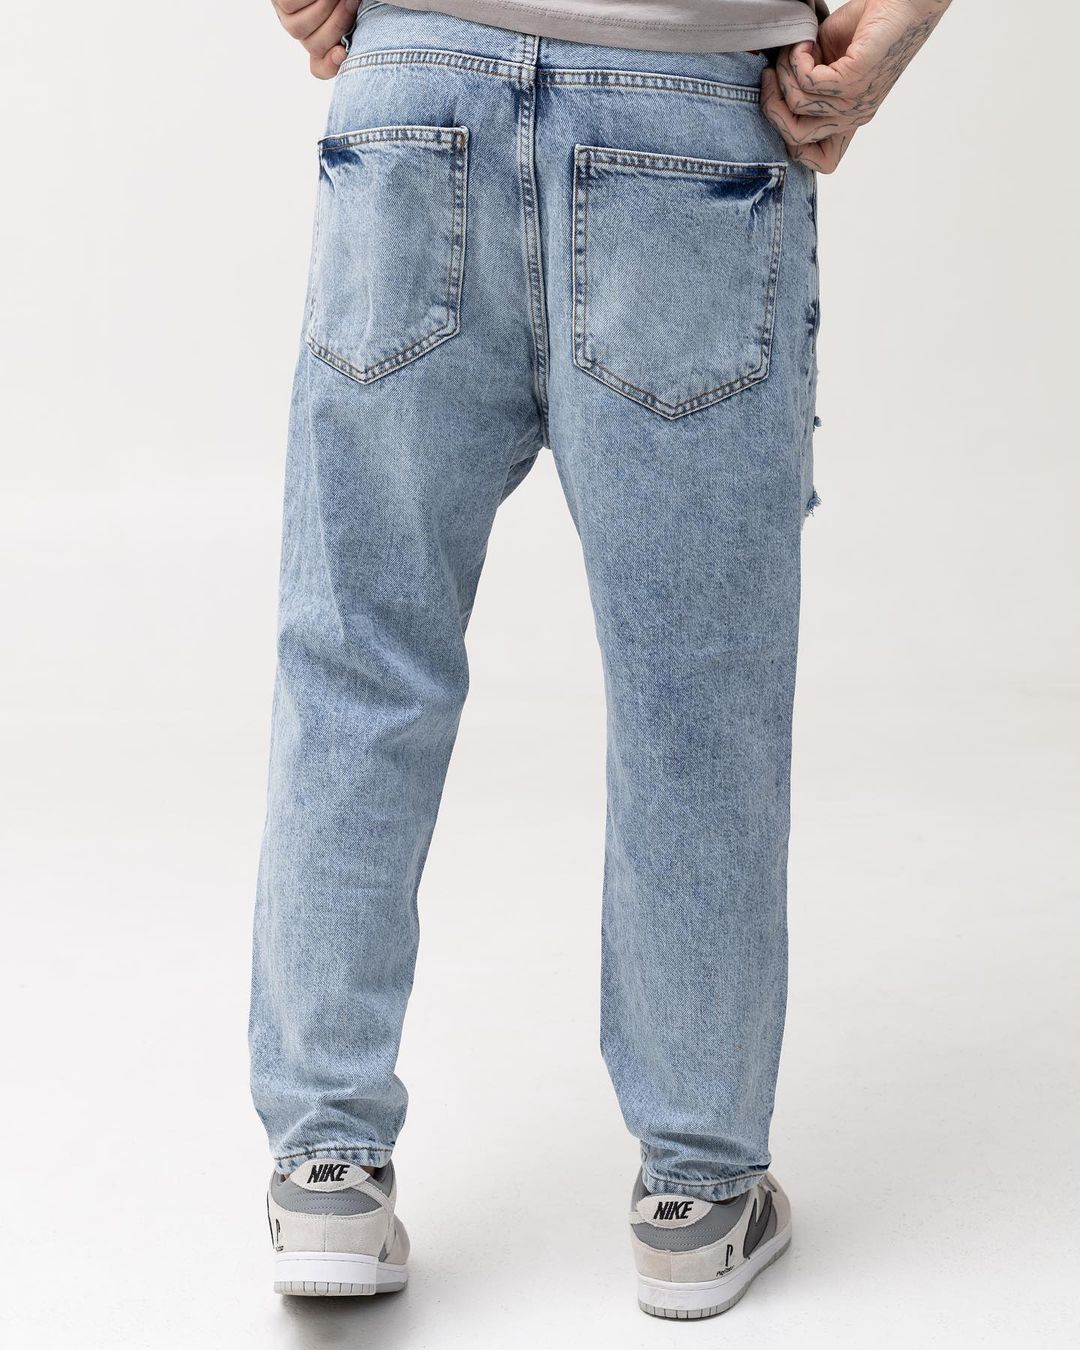 Мужские голубые джинсы BEZET с перфорацией - Фото 3